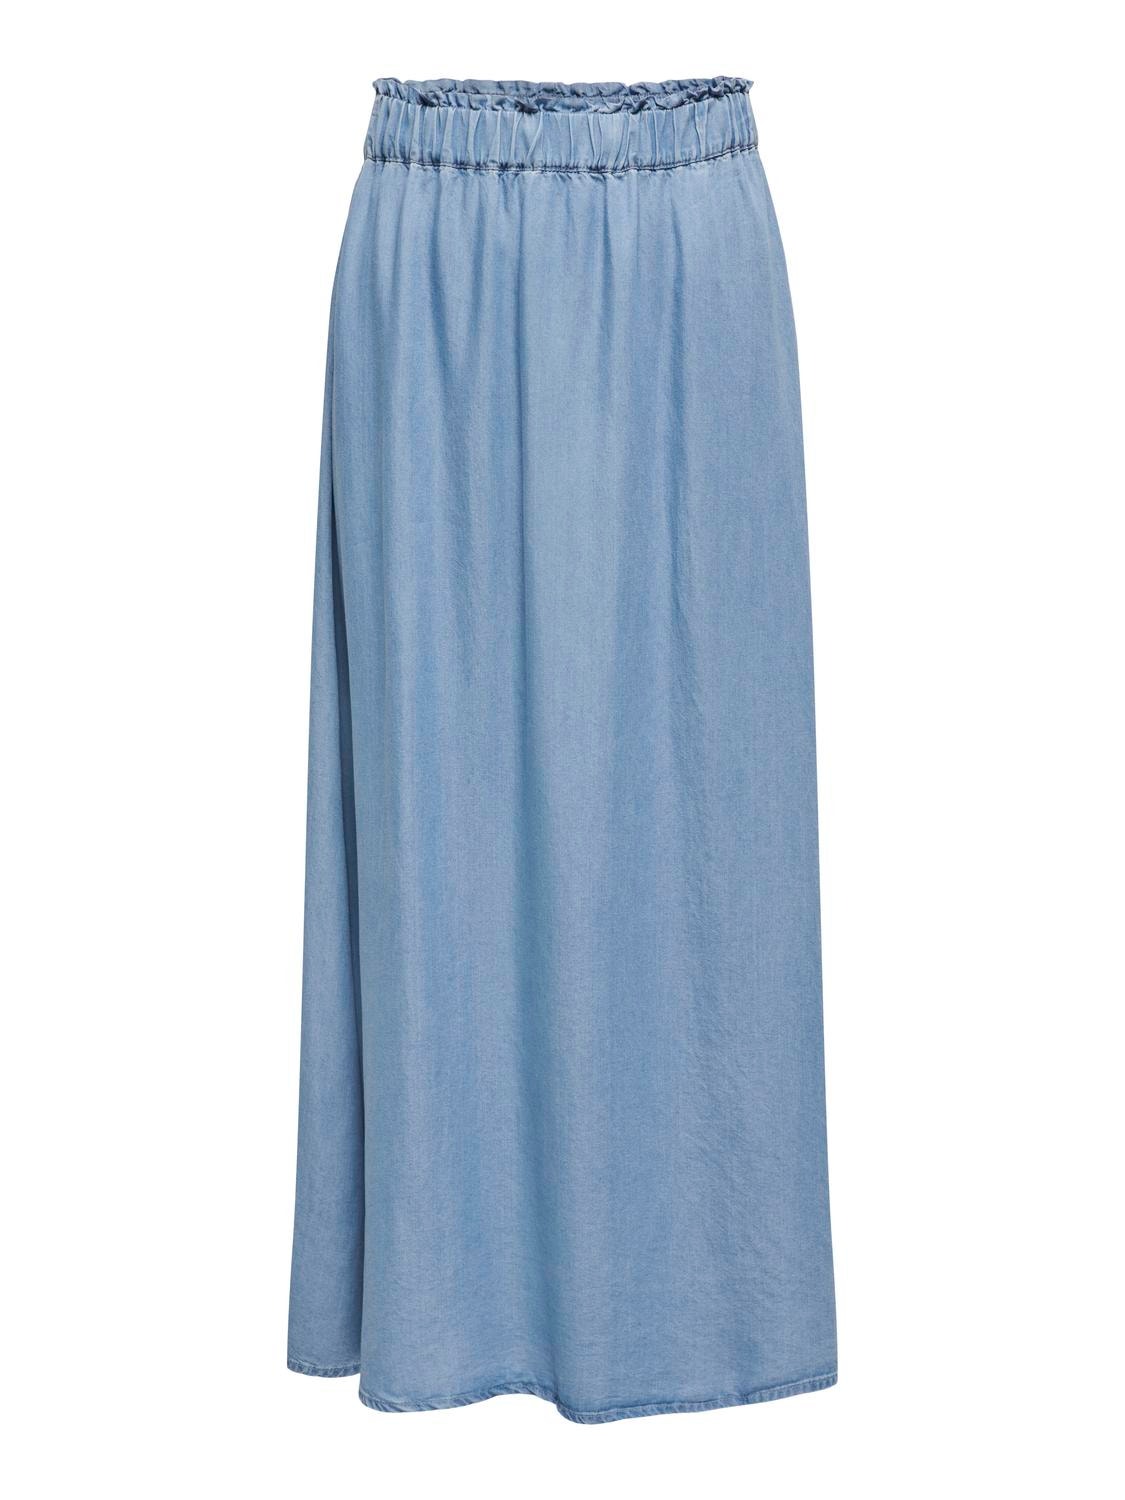 ONLY Maxi Denim Skirt -Medium Blue Denim - 15250371